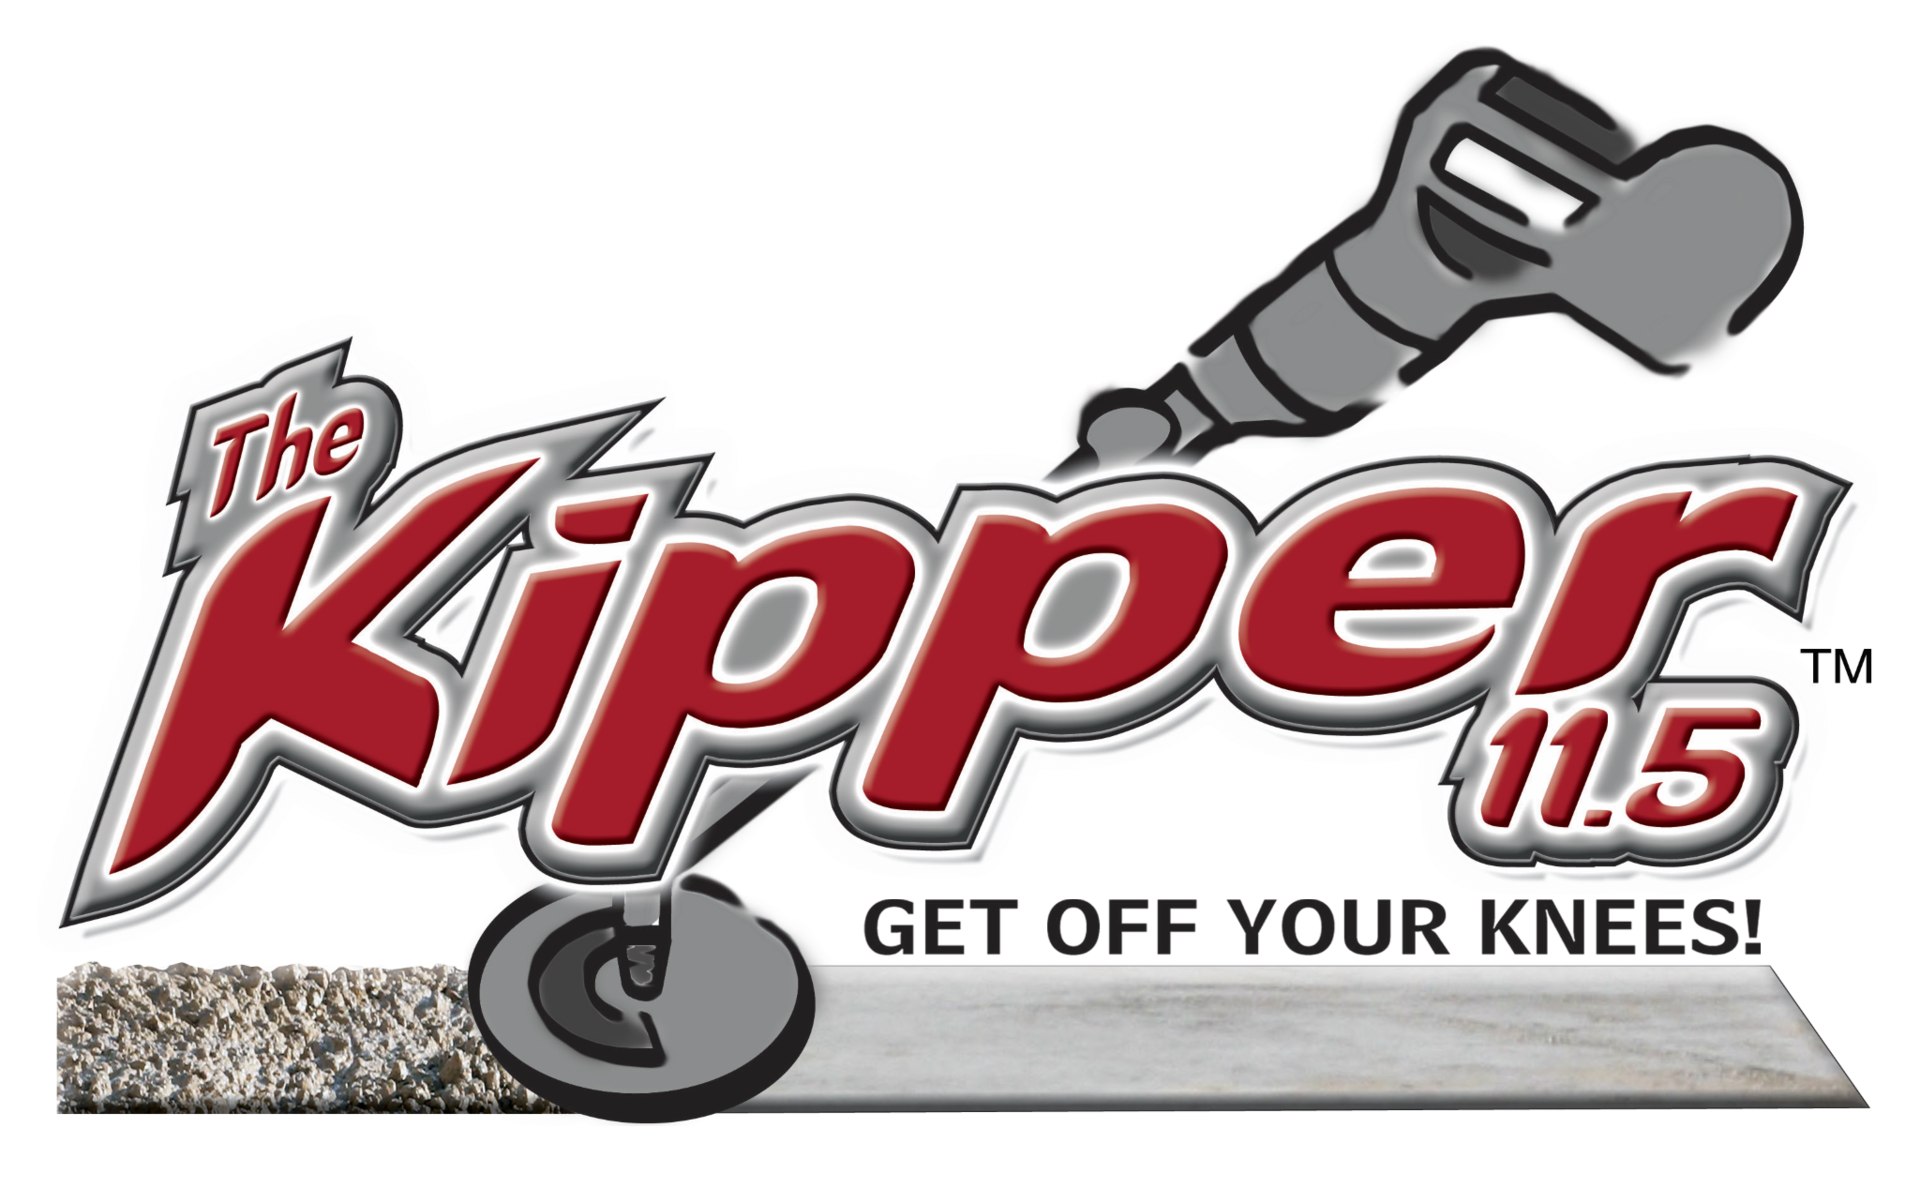 kipper tool company